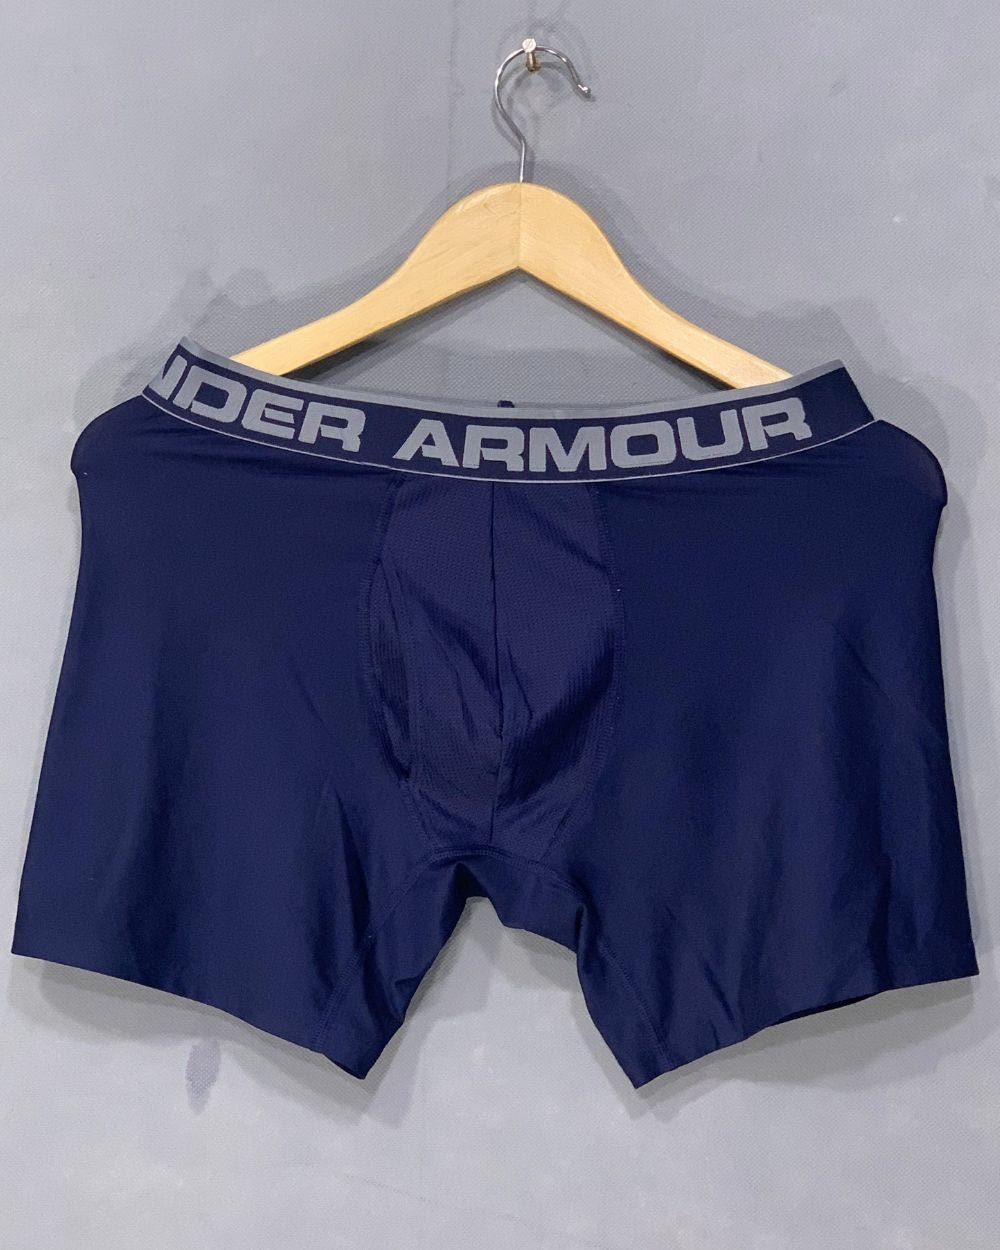 Under Armour Branded Boxer Underwear For Men